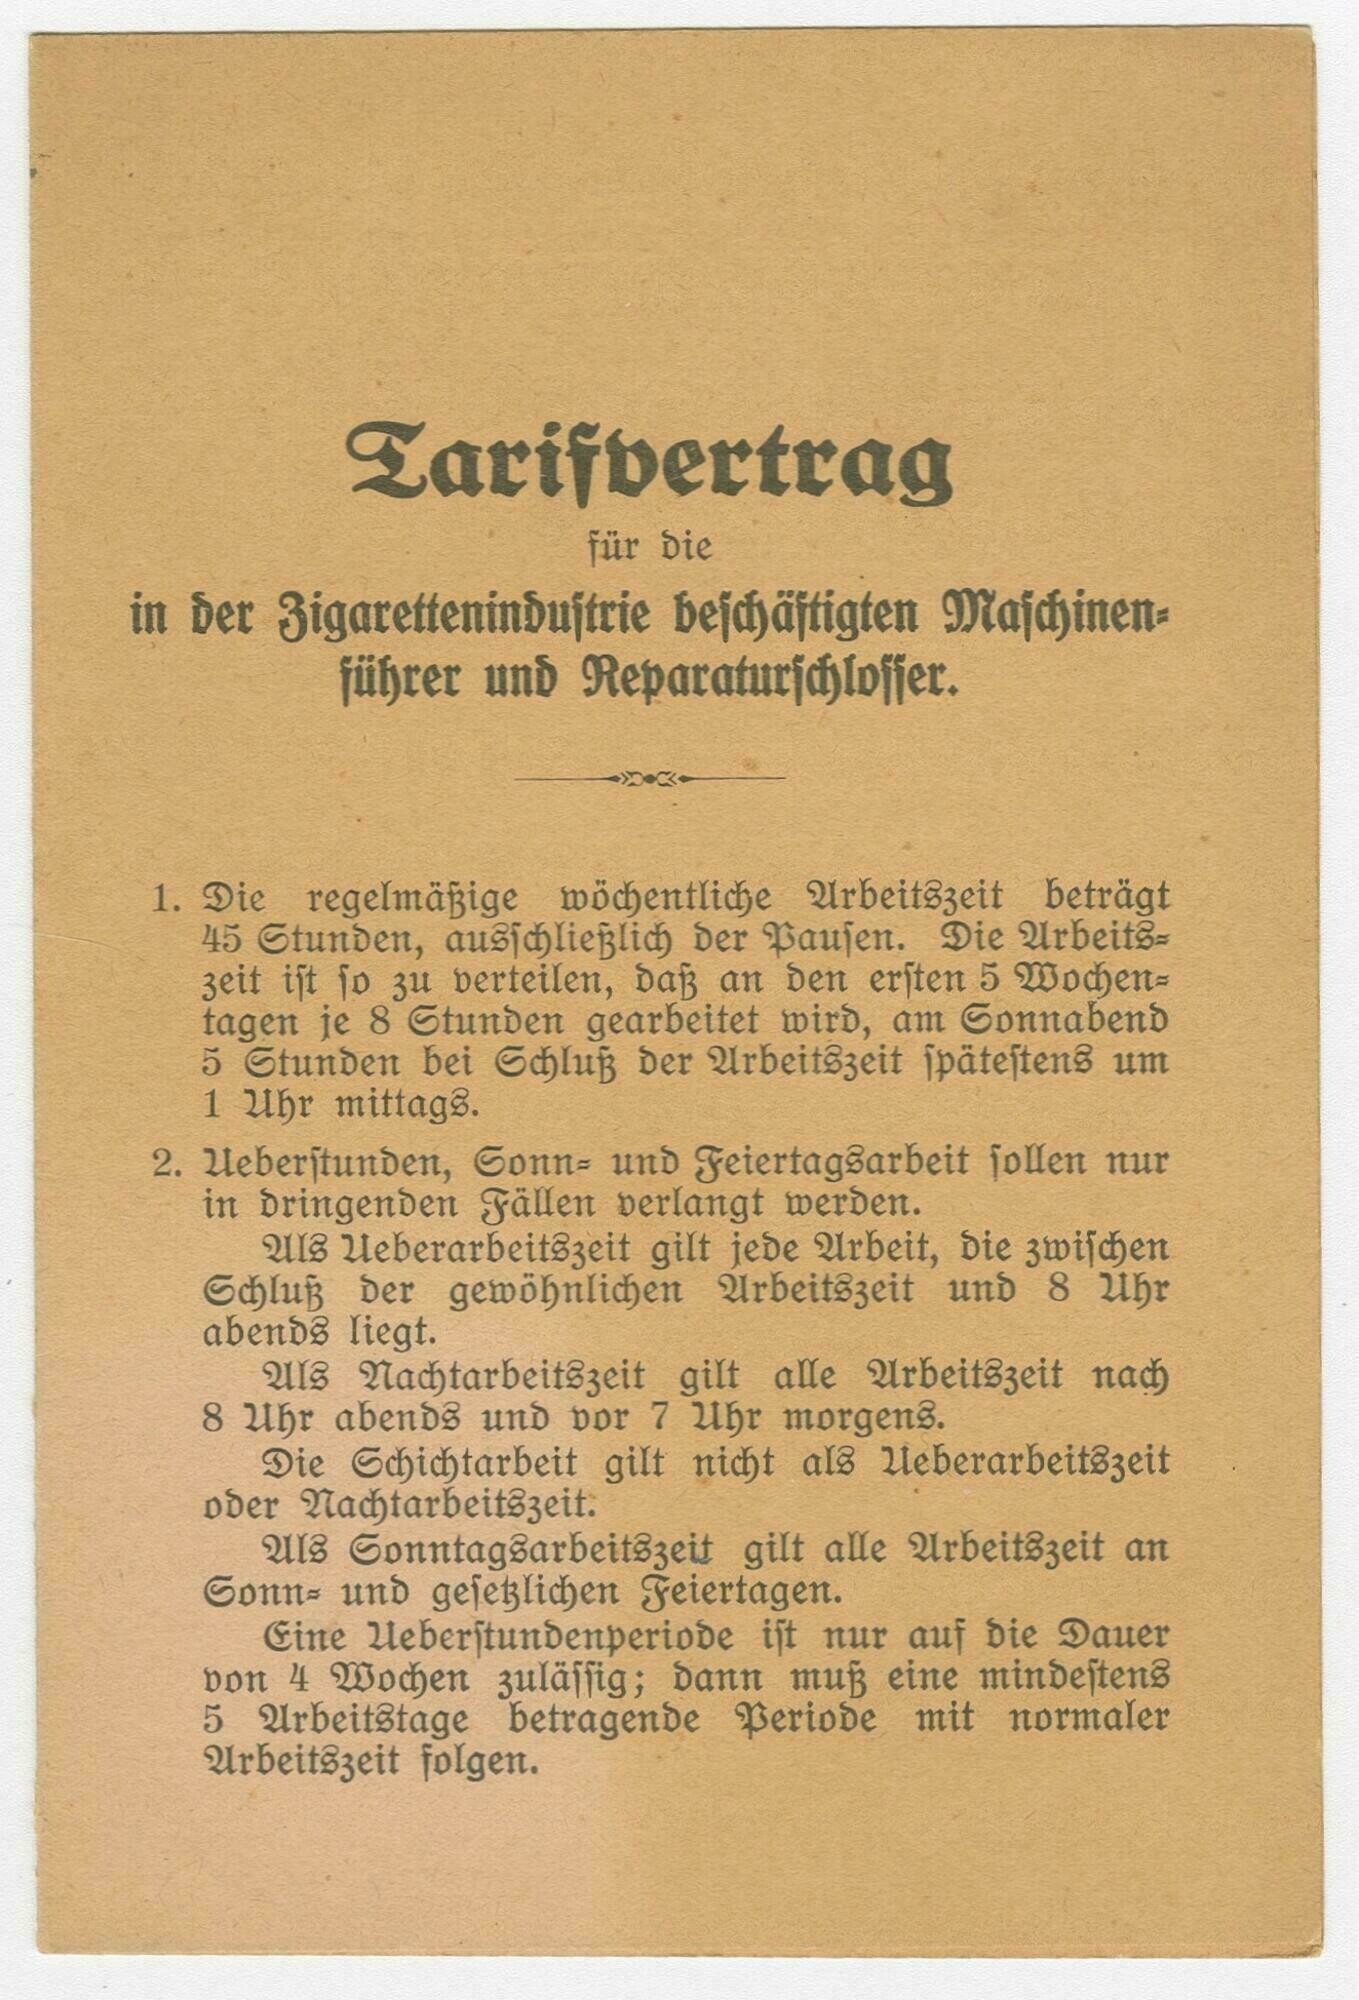 Tarifvertrag für die in der Zigarettenindustrie beschäftigten Maschinenführer und Reparaturschlosser (Stadtmuseum Dresden CC BY-NC-ND)